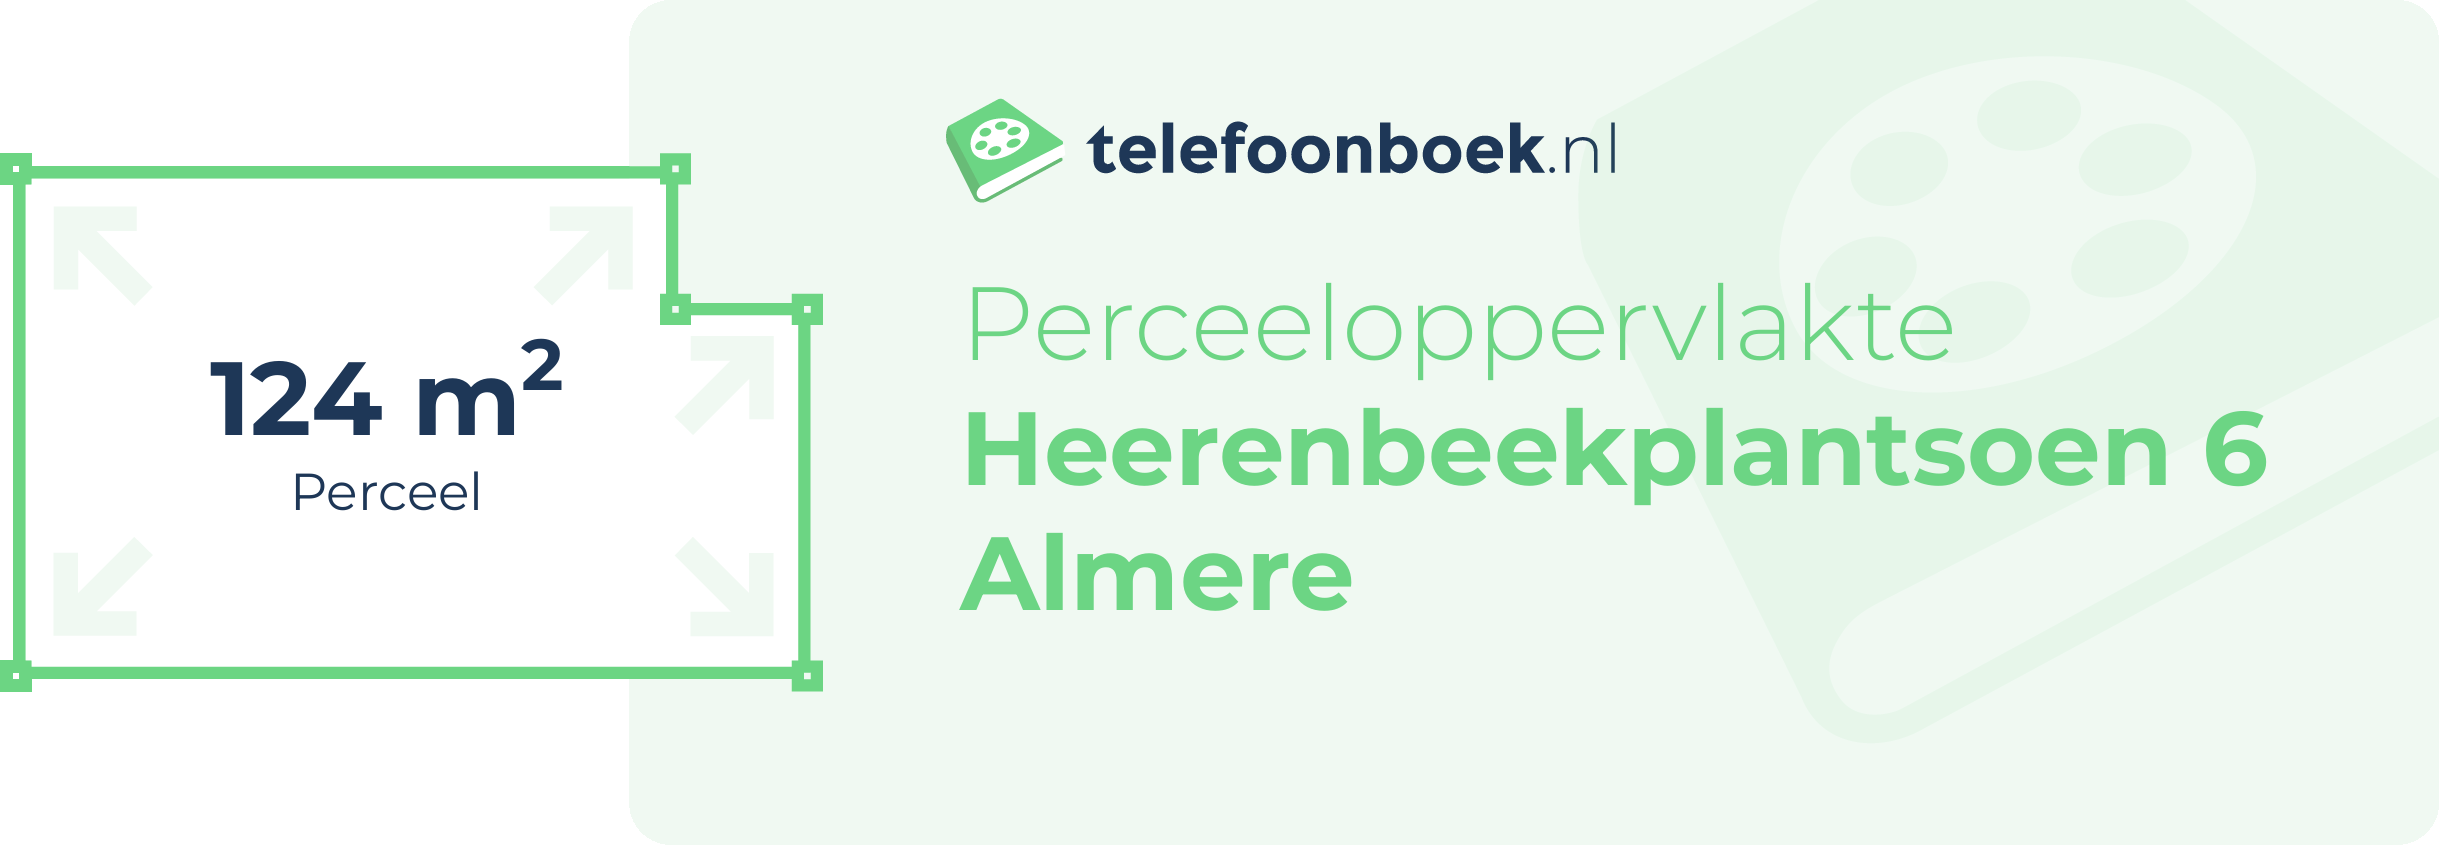 Perceeloppervlakte Heerenbeekplantsoen 6 Almere